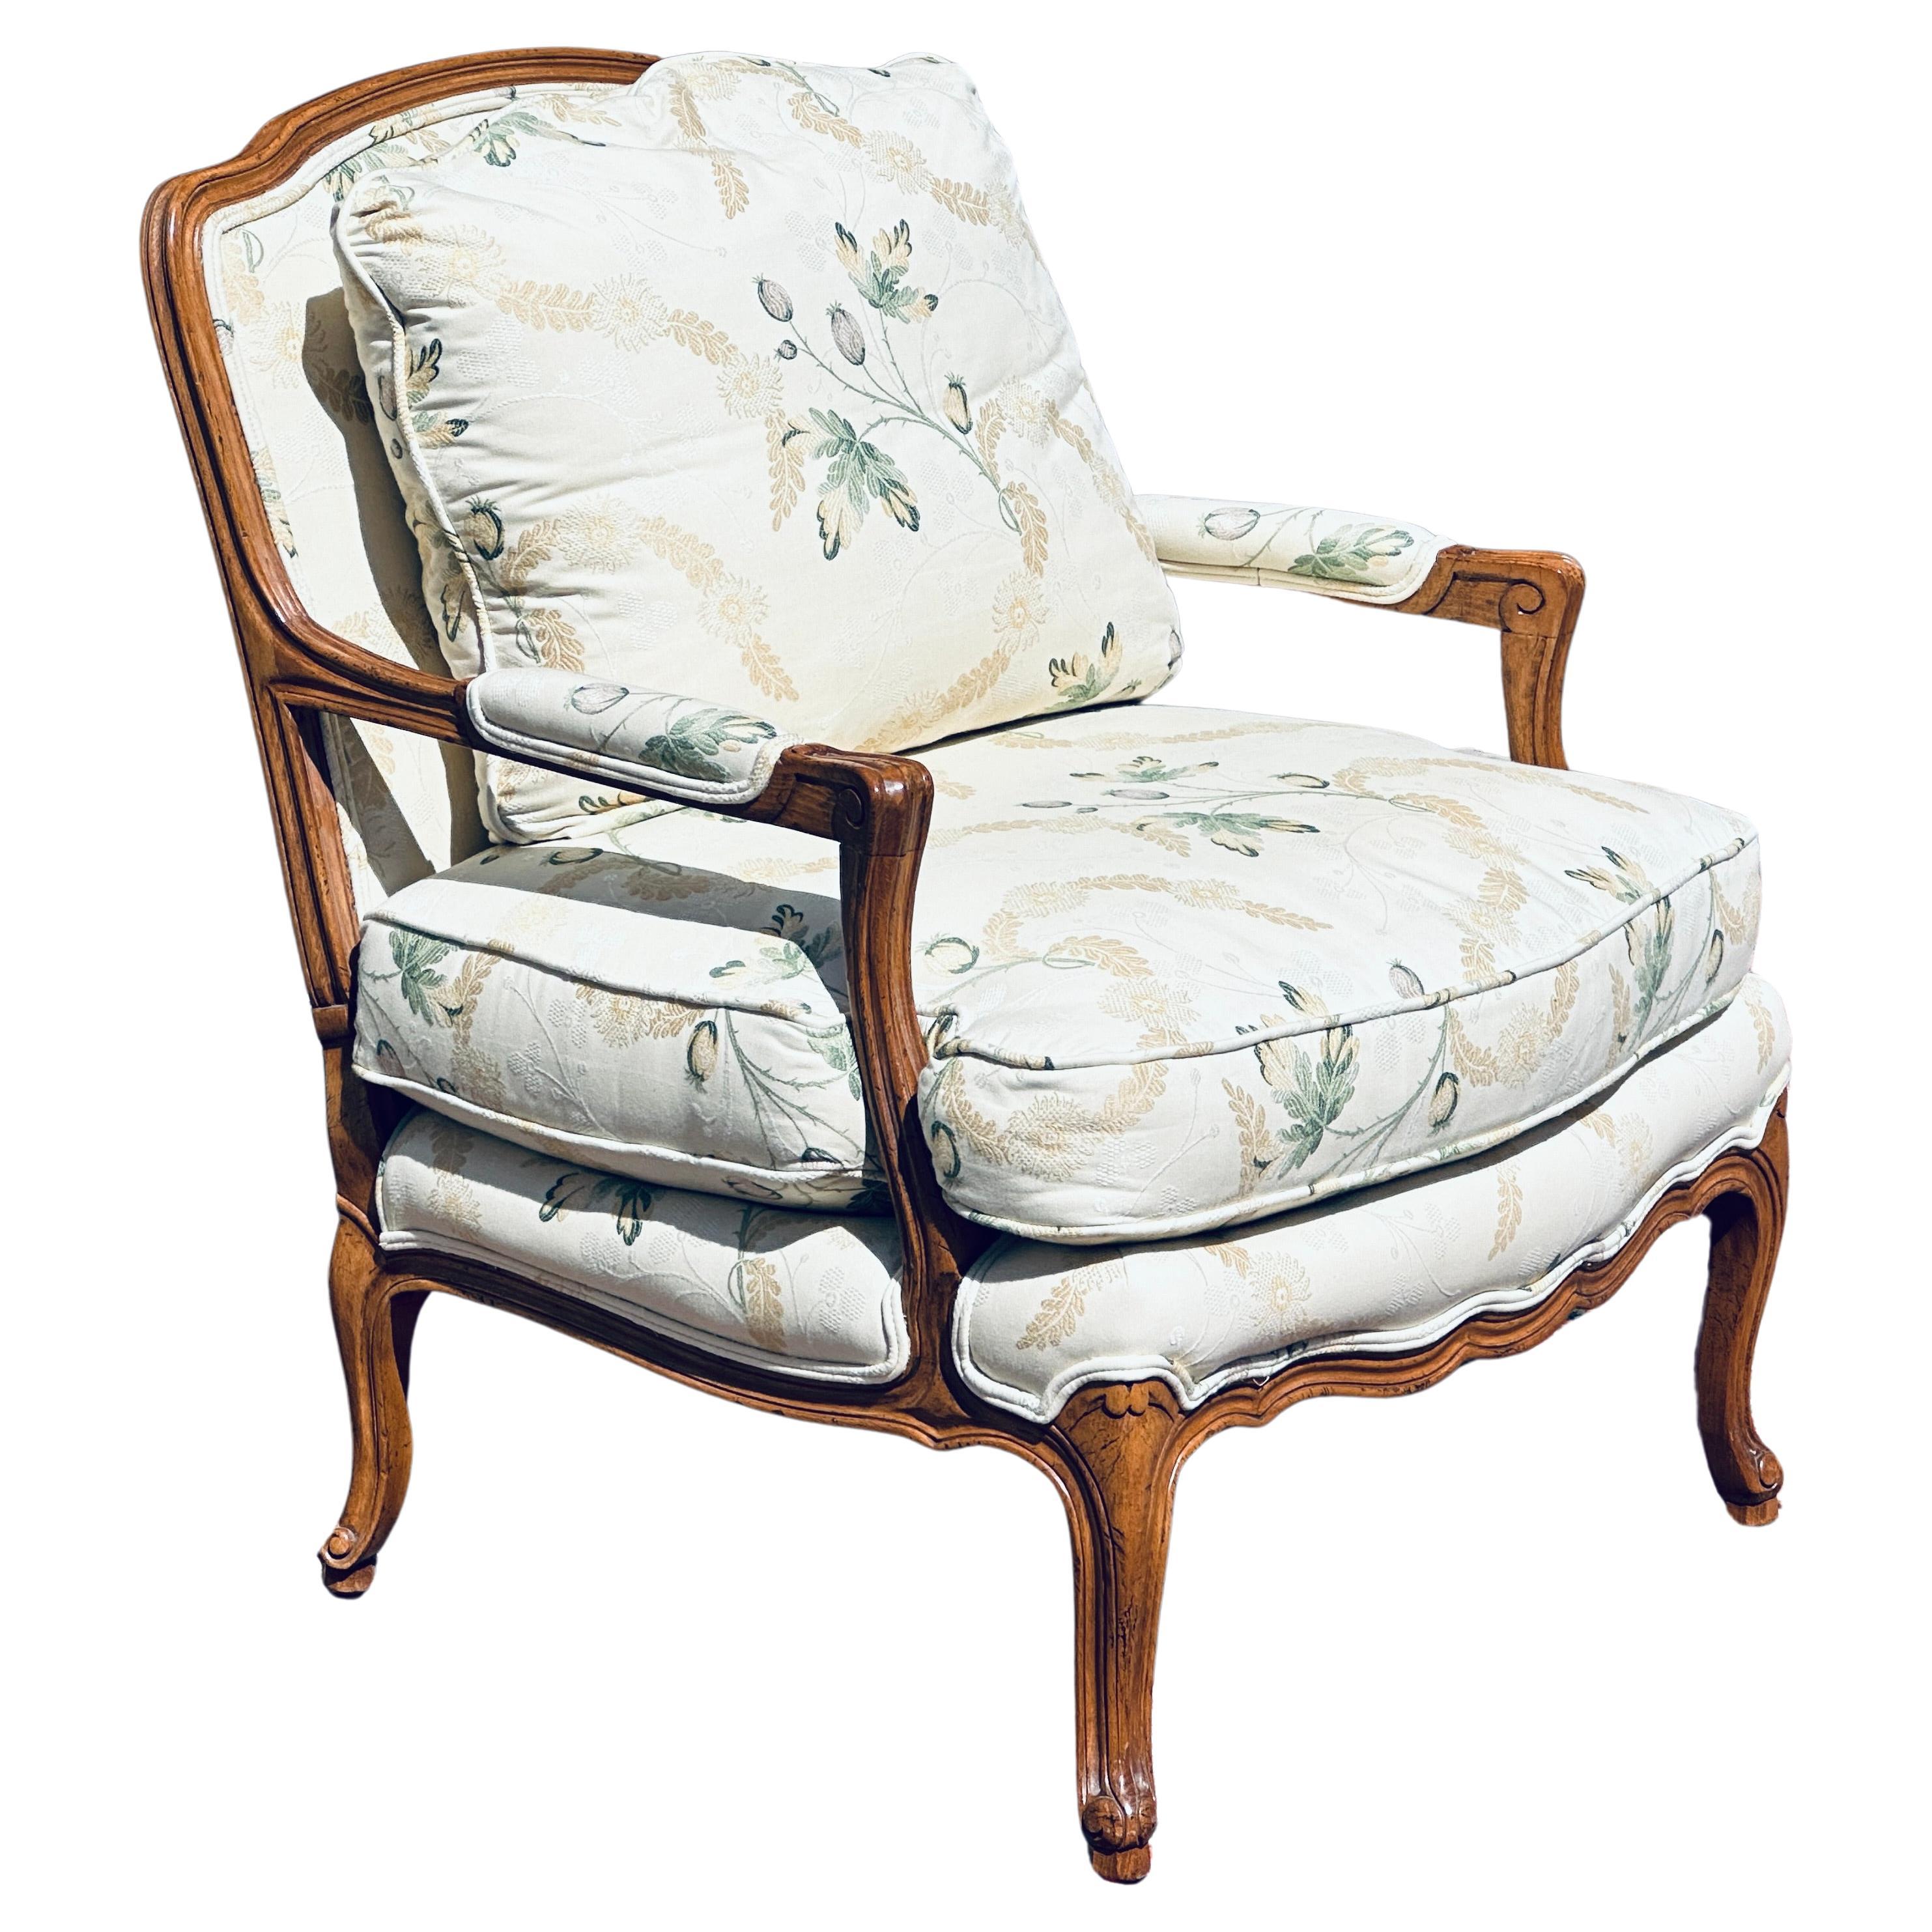 Baker Furniture Co. Chaise Bergere à accoudoirs ouverts, de style français, sculptée et florale